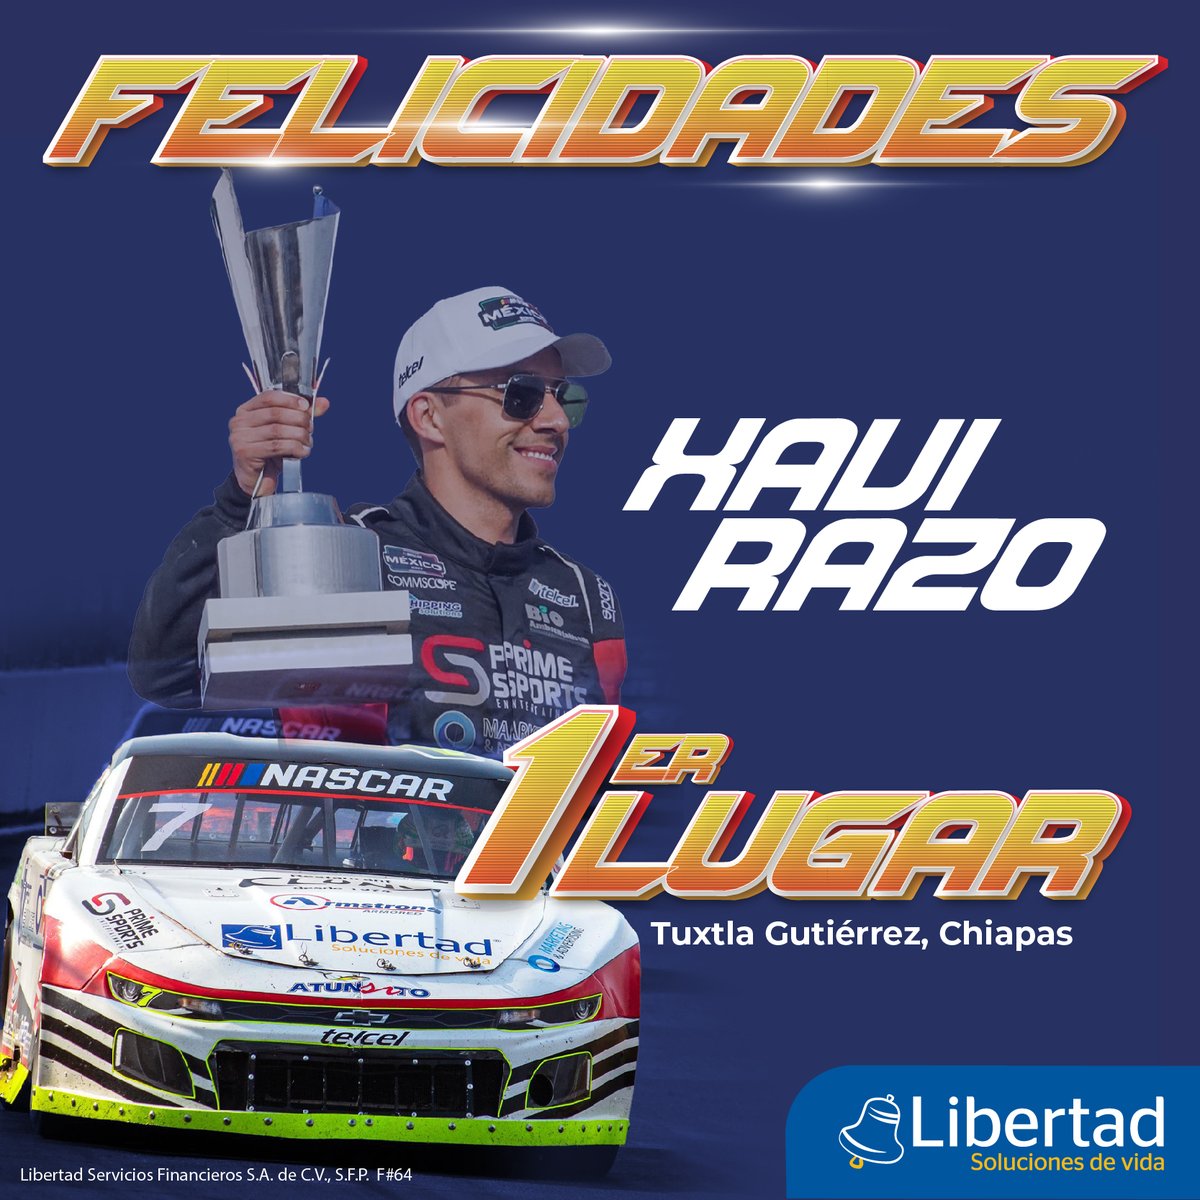 Libertad Soluciones de Vida orgulloso patrocinador oficial de la @NASCARMex 🏆🏁 ¡Muchas felicidades a @XaviRazo, Ganador del Primer Lugar, por tan emocionante carrera! Gran resultado para todo el equipo. 👏🏻👏🏻👏🏻 #LibertadSolucionesdeVida